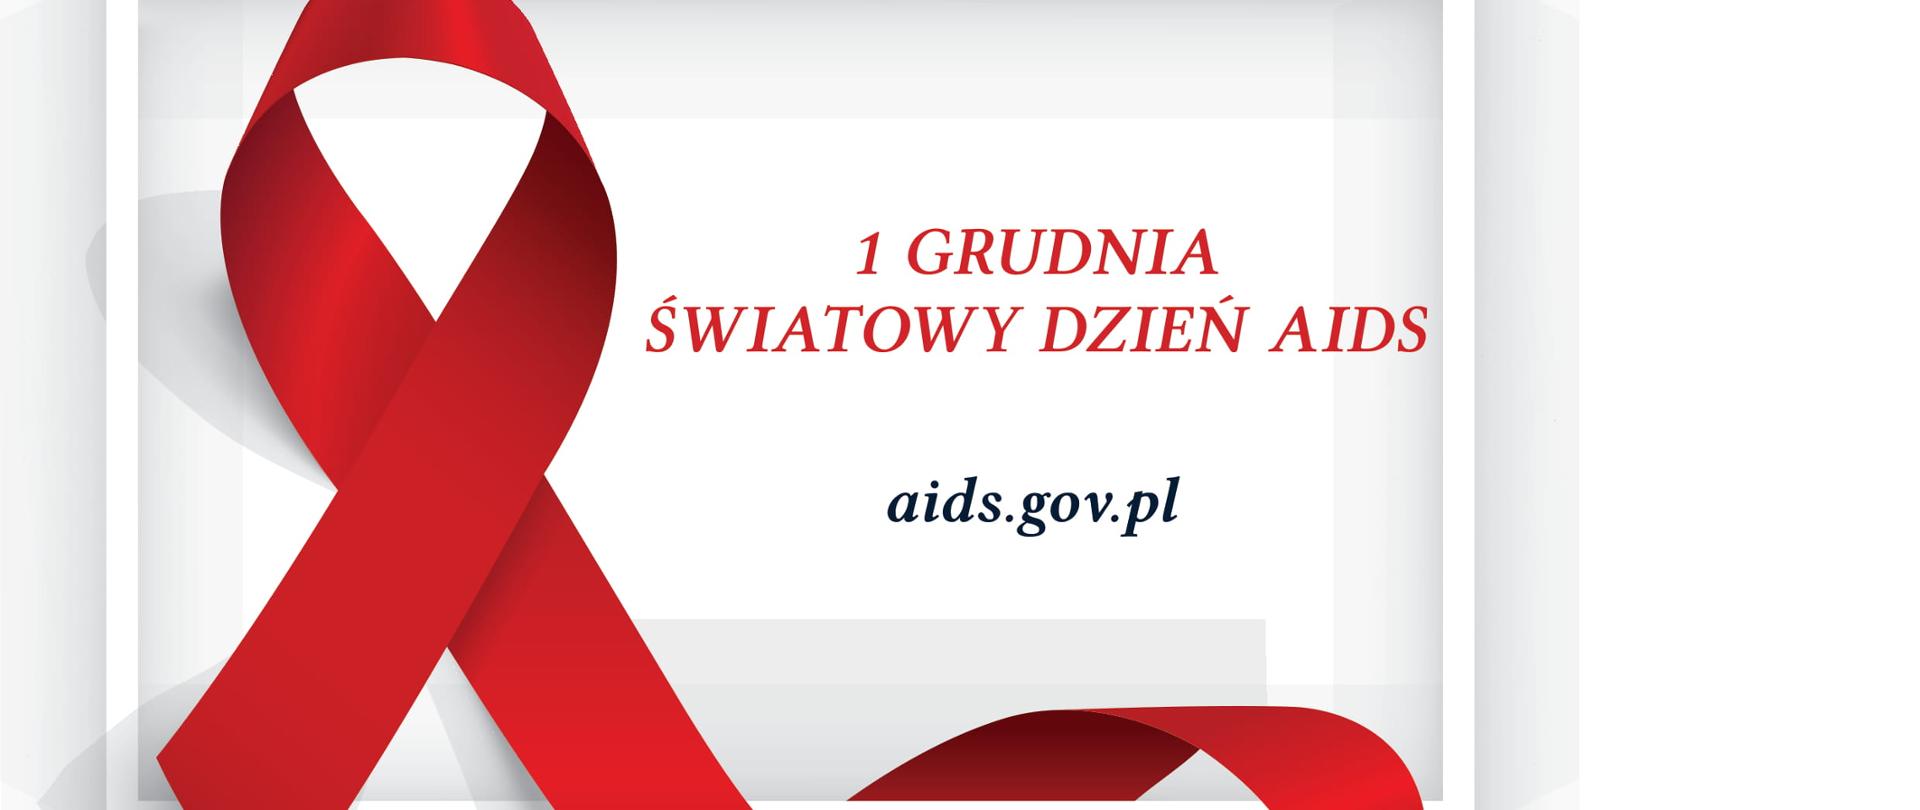 1 grudnia. Światowy dzień AIDS